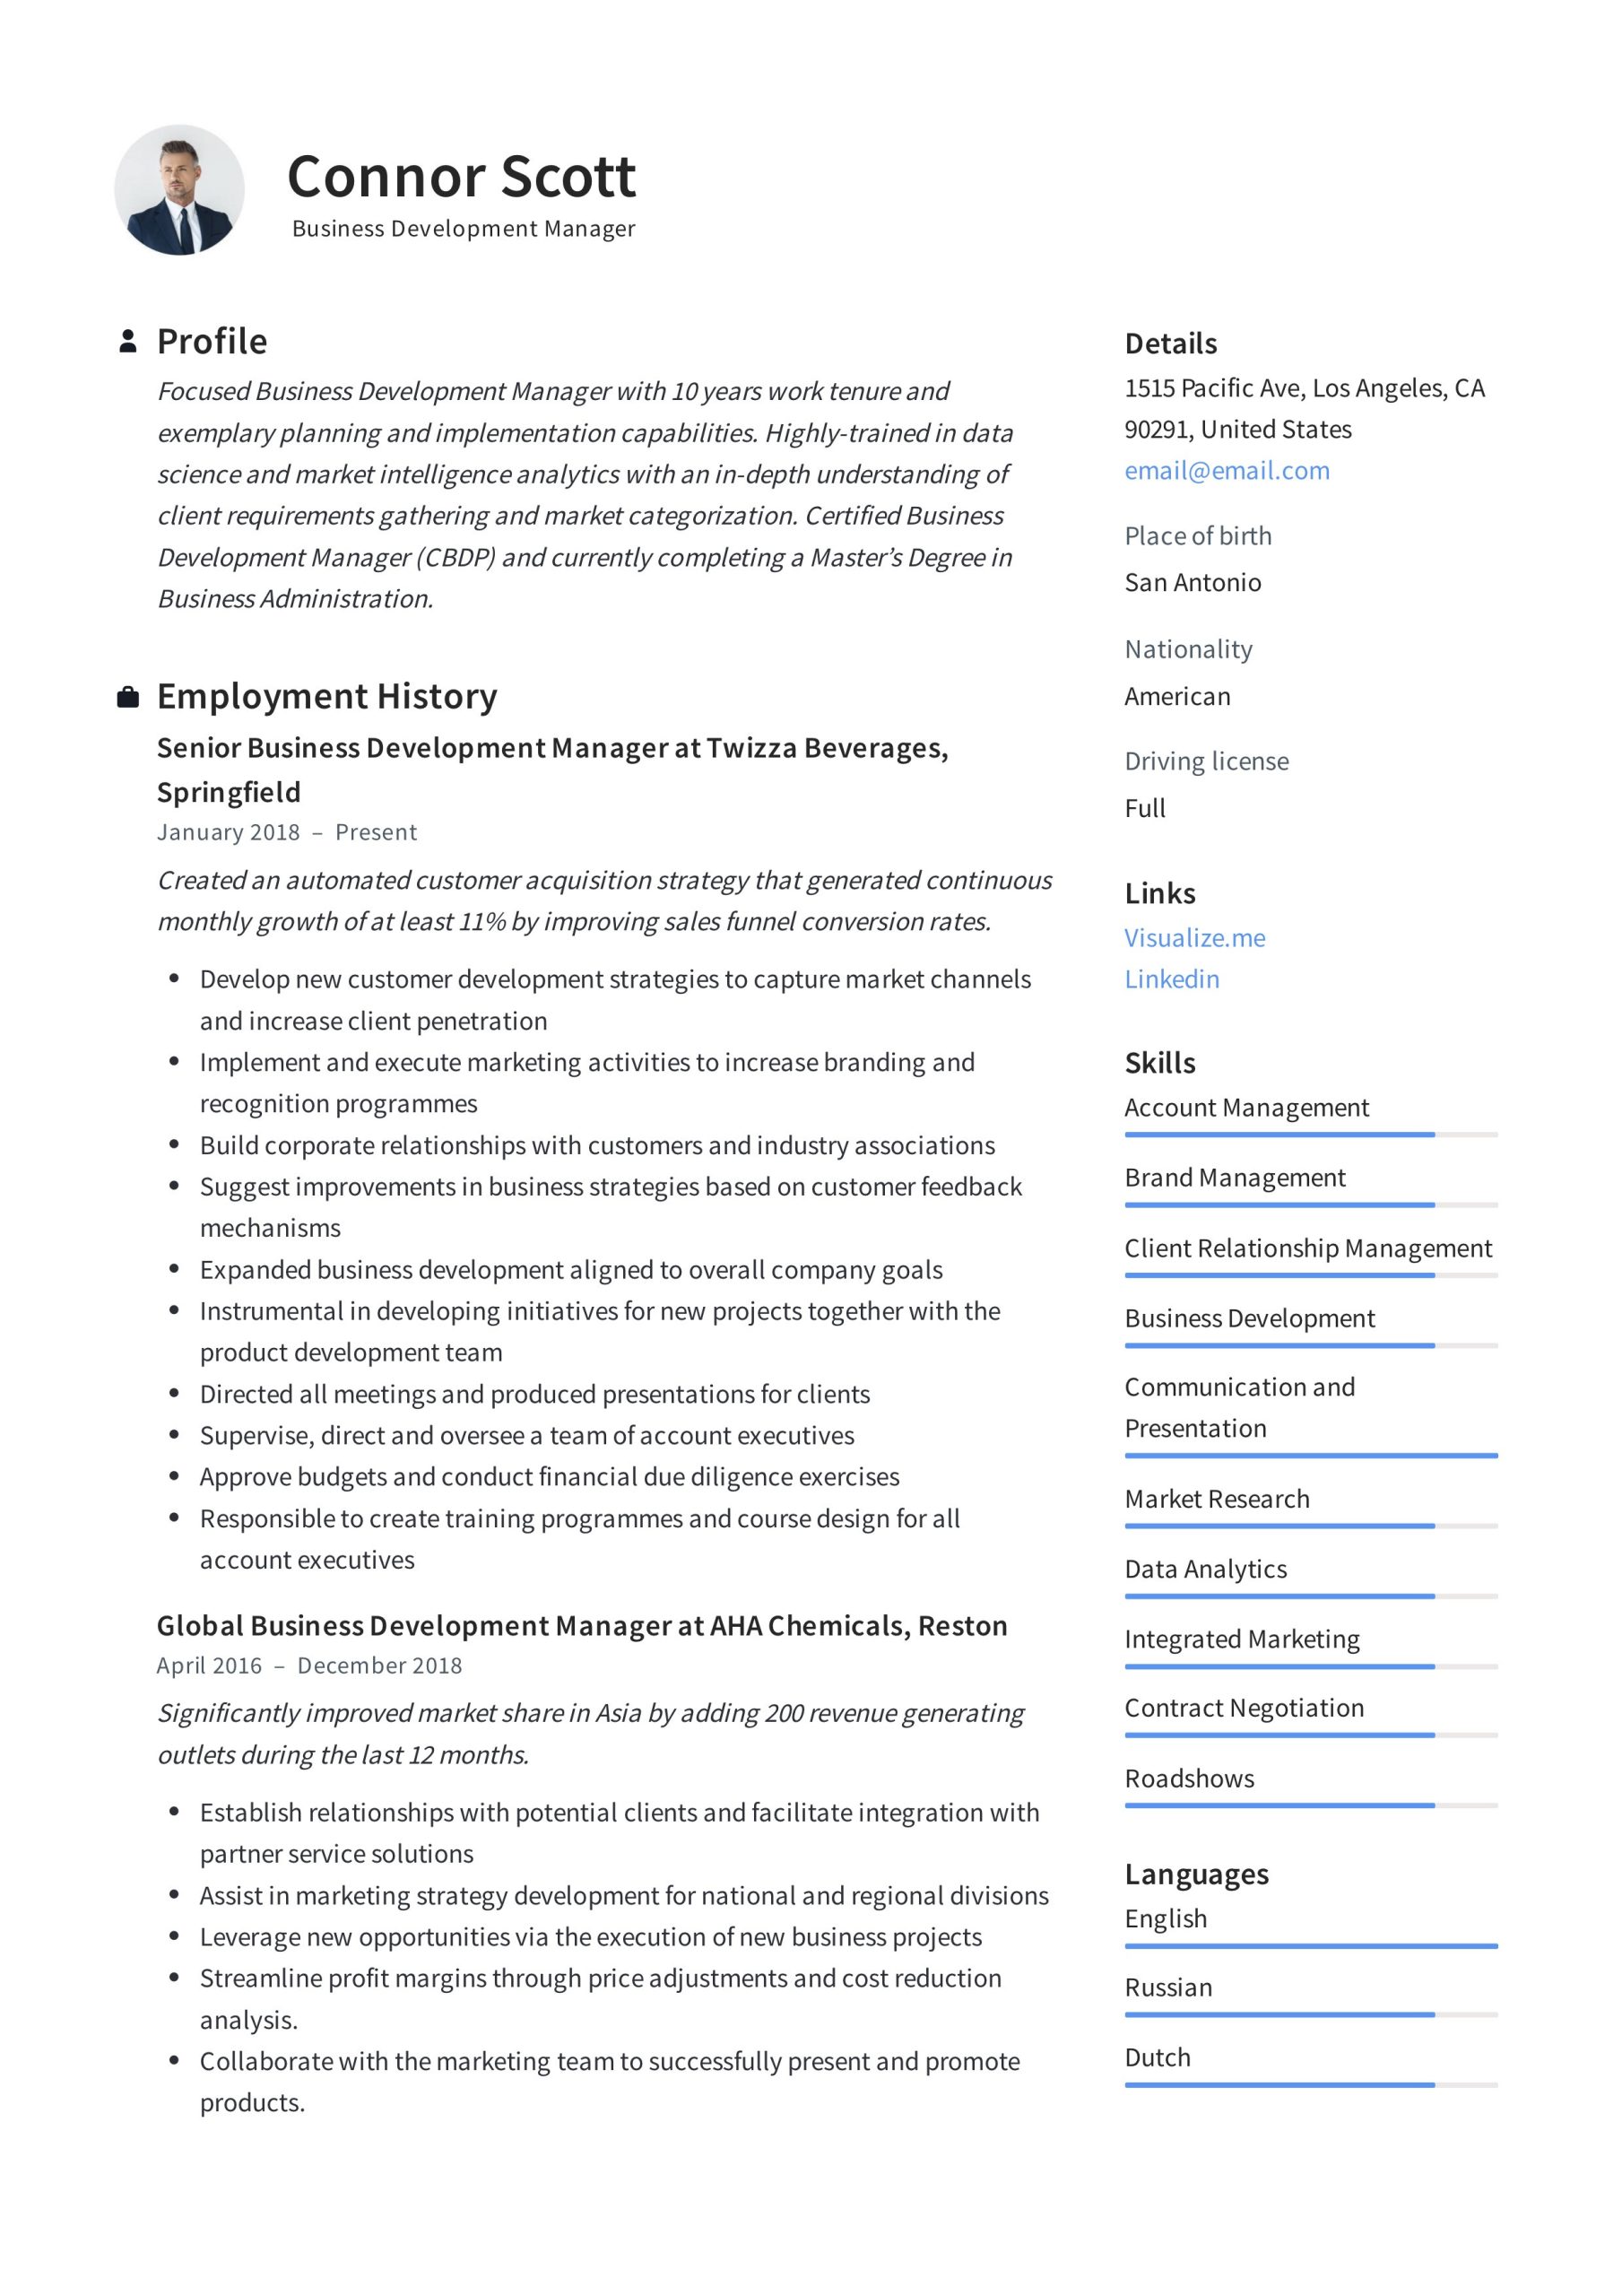 Resume Samples for Business Development Manager India Business Development Manager Resume & Guide 2022